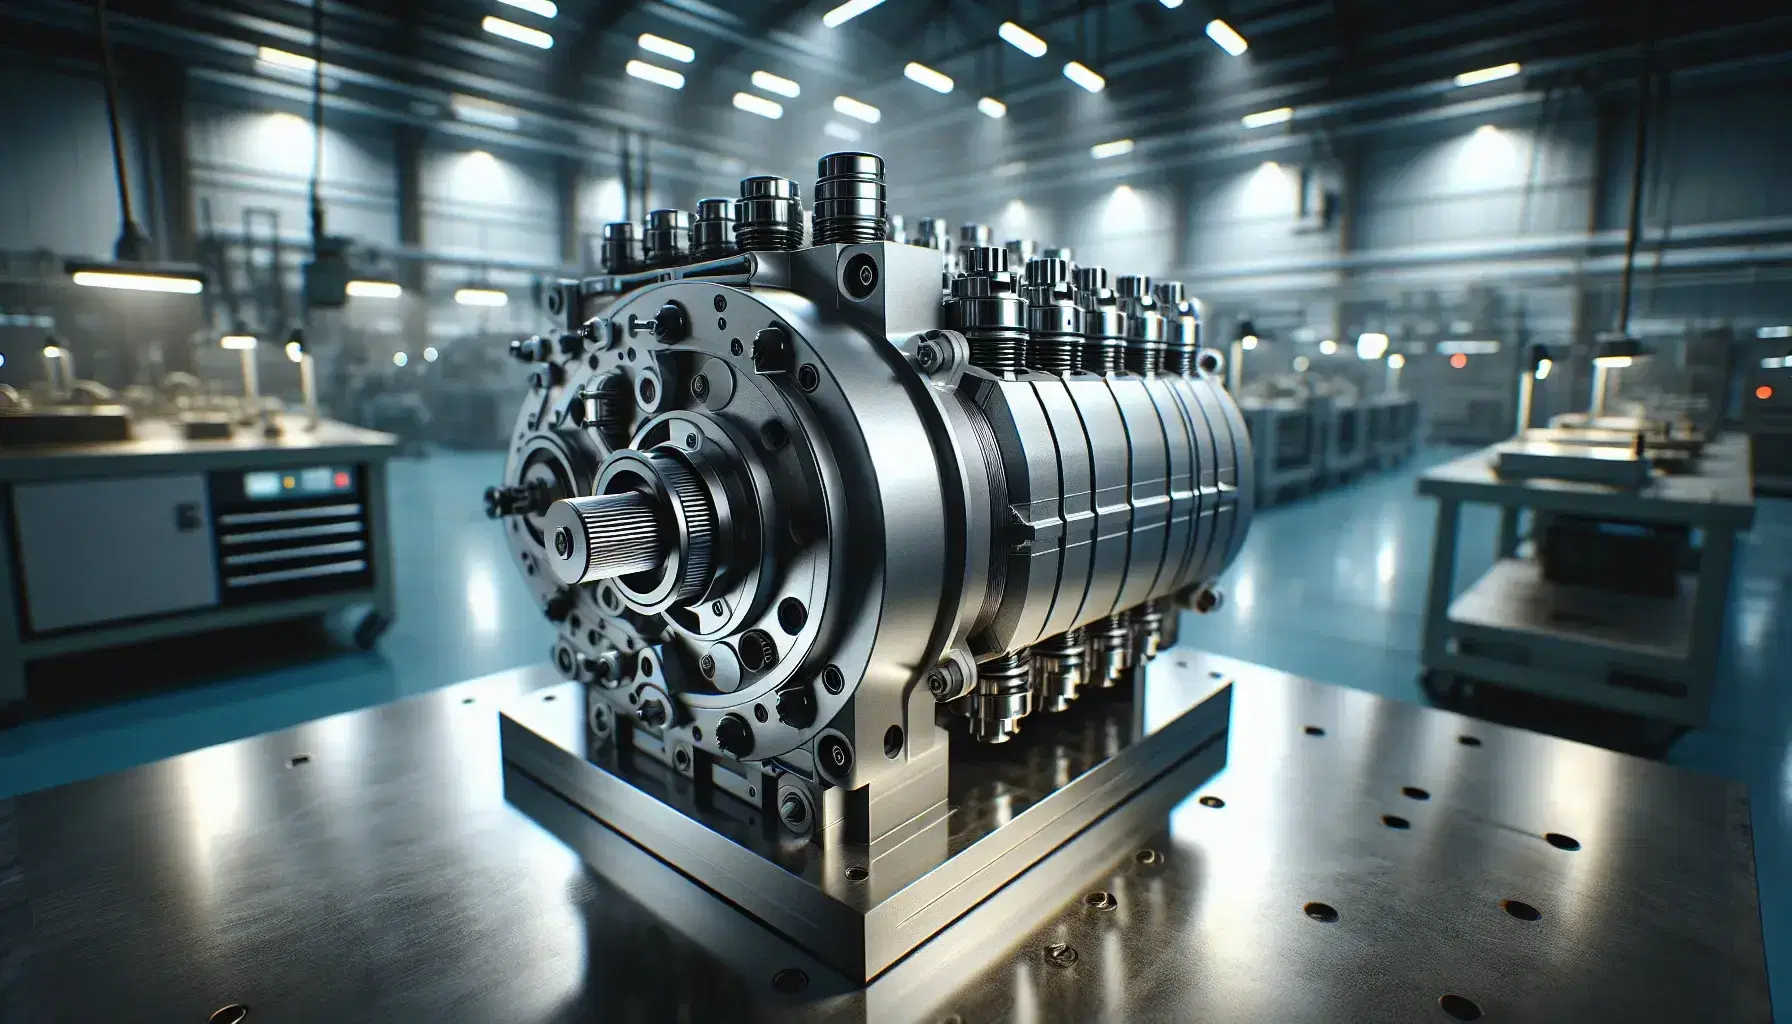 Motor hidráulico de pistones axiales con carcasa metálica en superficie de trabajo, rodeado de herramientas industriales en un entorno con iluminación fluorescente.